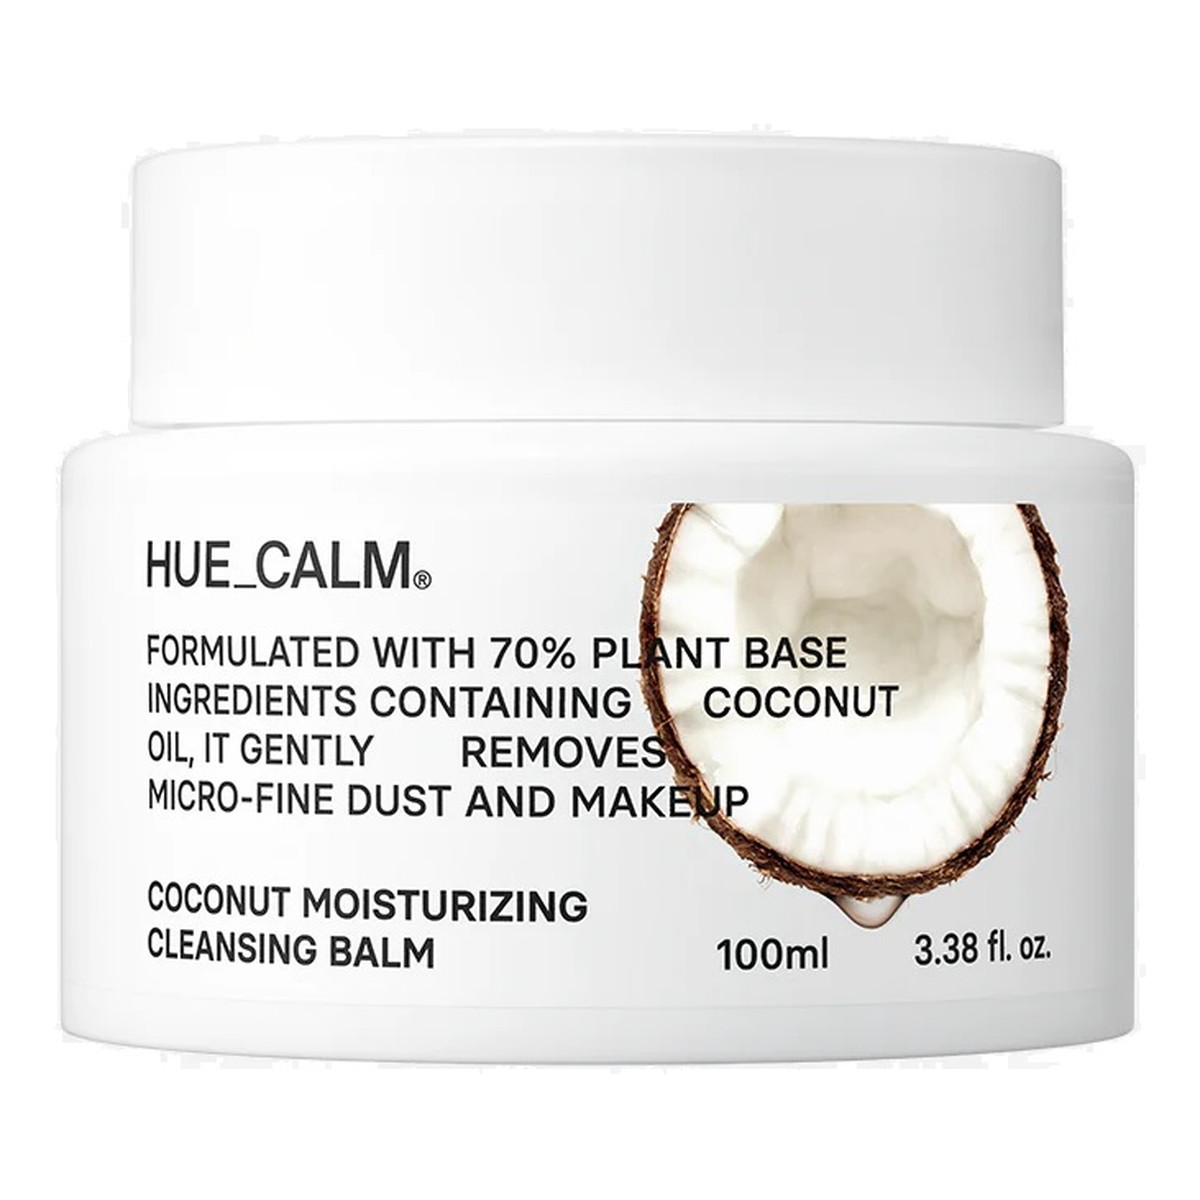 Hue Calm Vegan Coconut Moisturizing Cleansing Balm nawilżający Balsam oczyszczający do twarzy 100ml